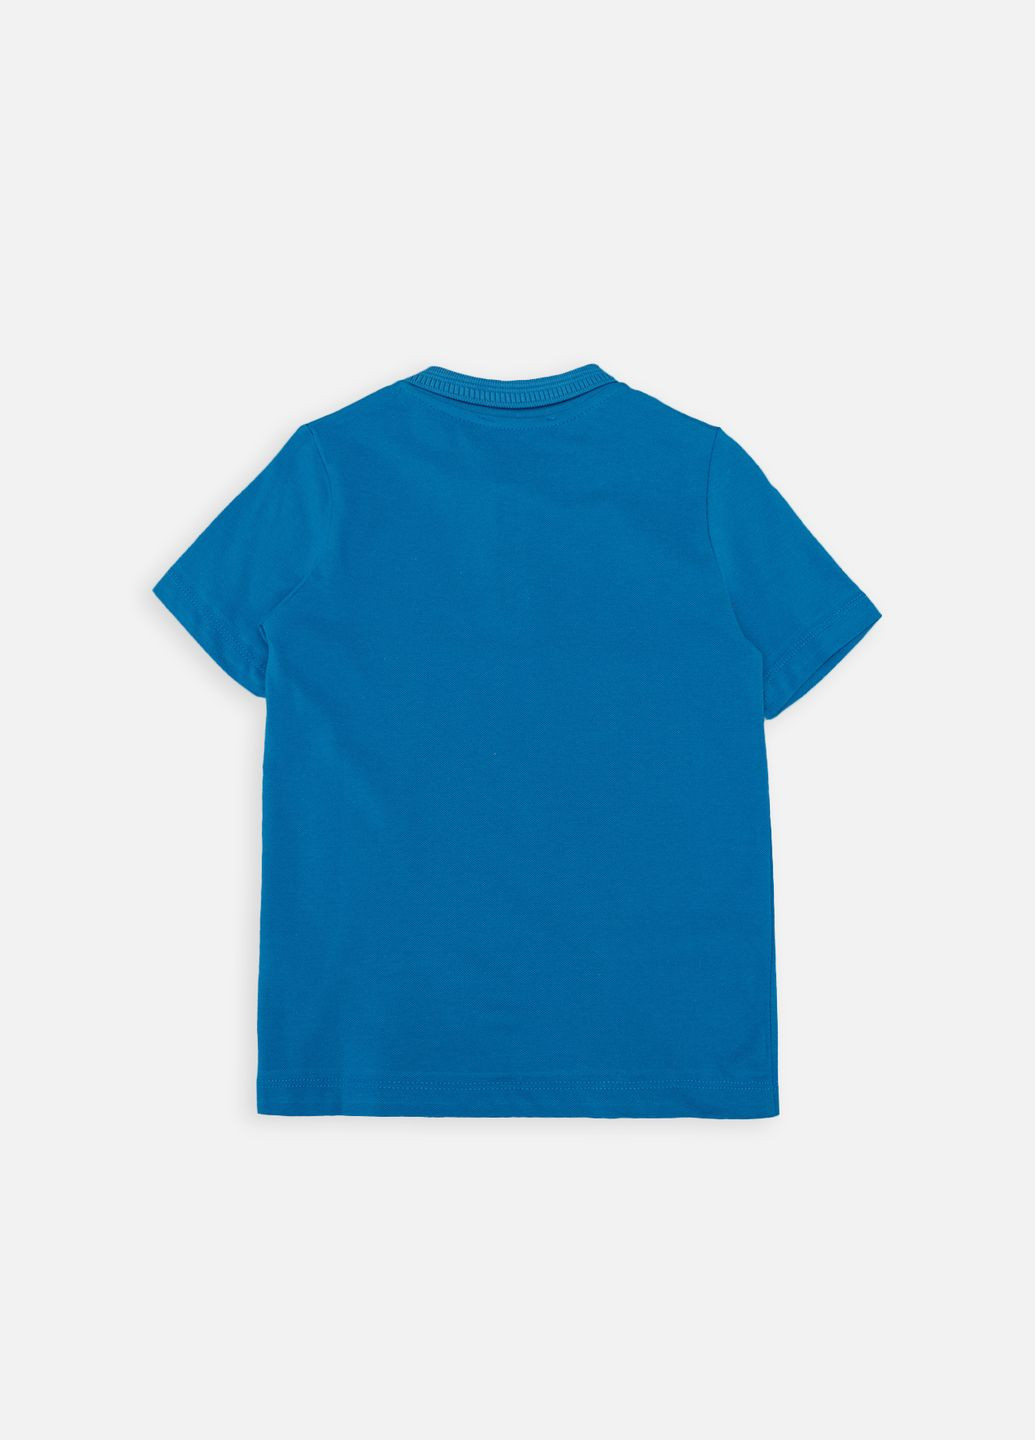 Темно-синяя детская футболка-футболка-поло с коротким рукавом для мальчика цвет темно-синий цб-00250155 для мальчика Pengim